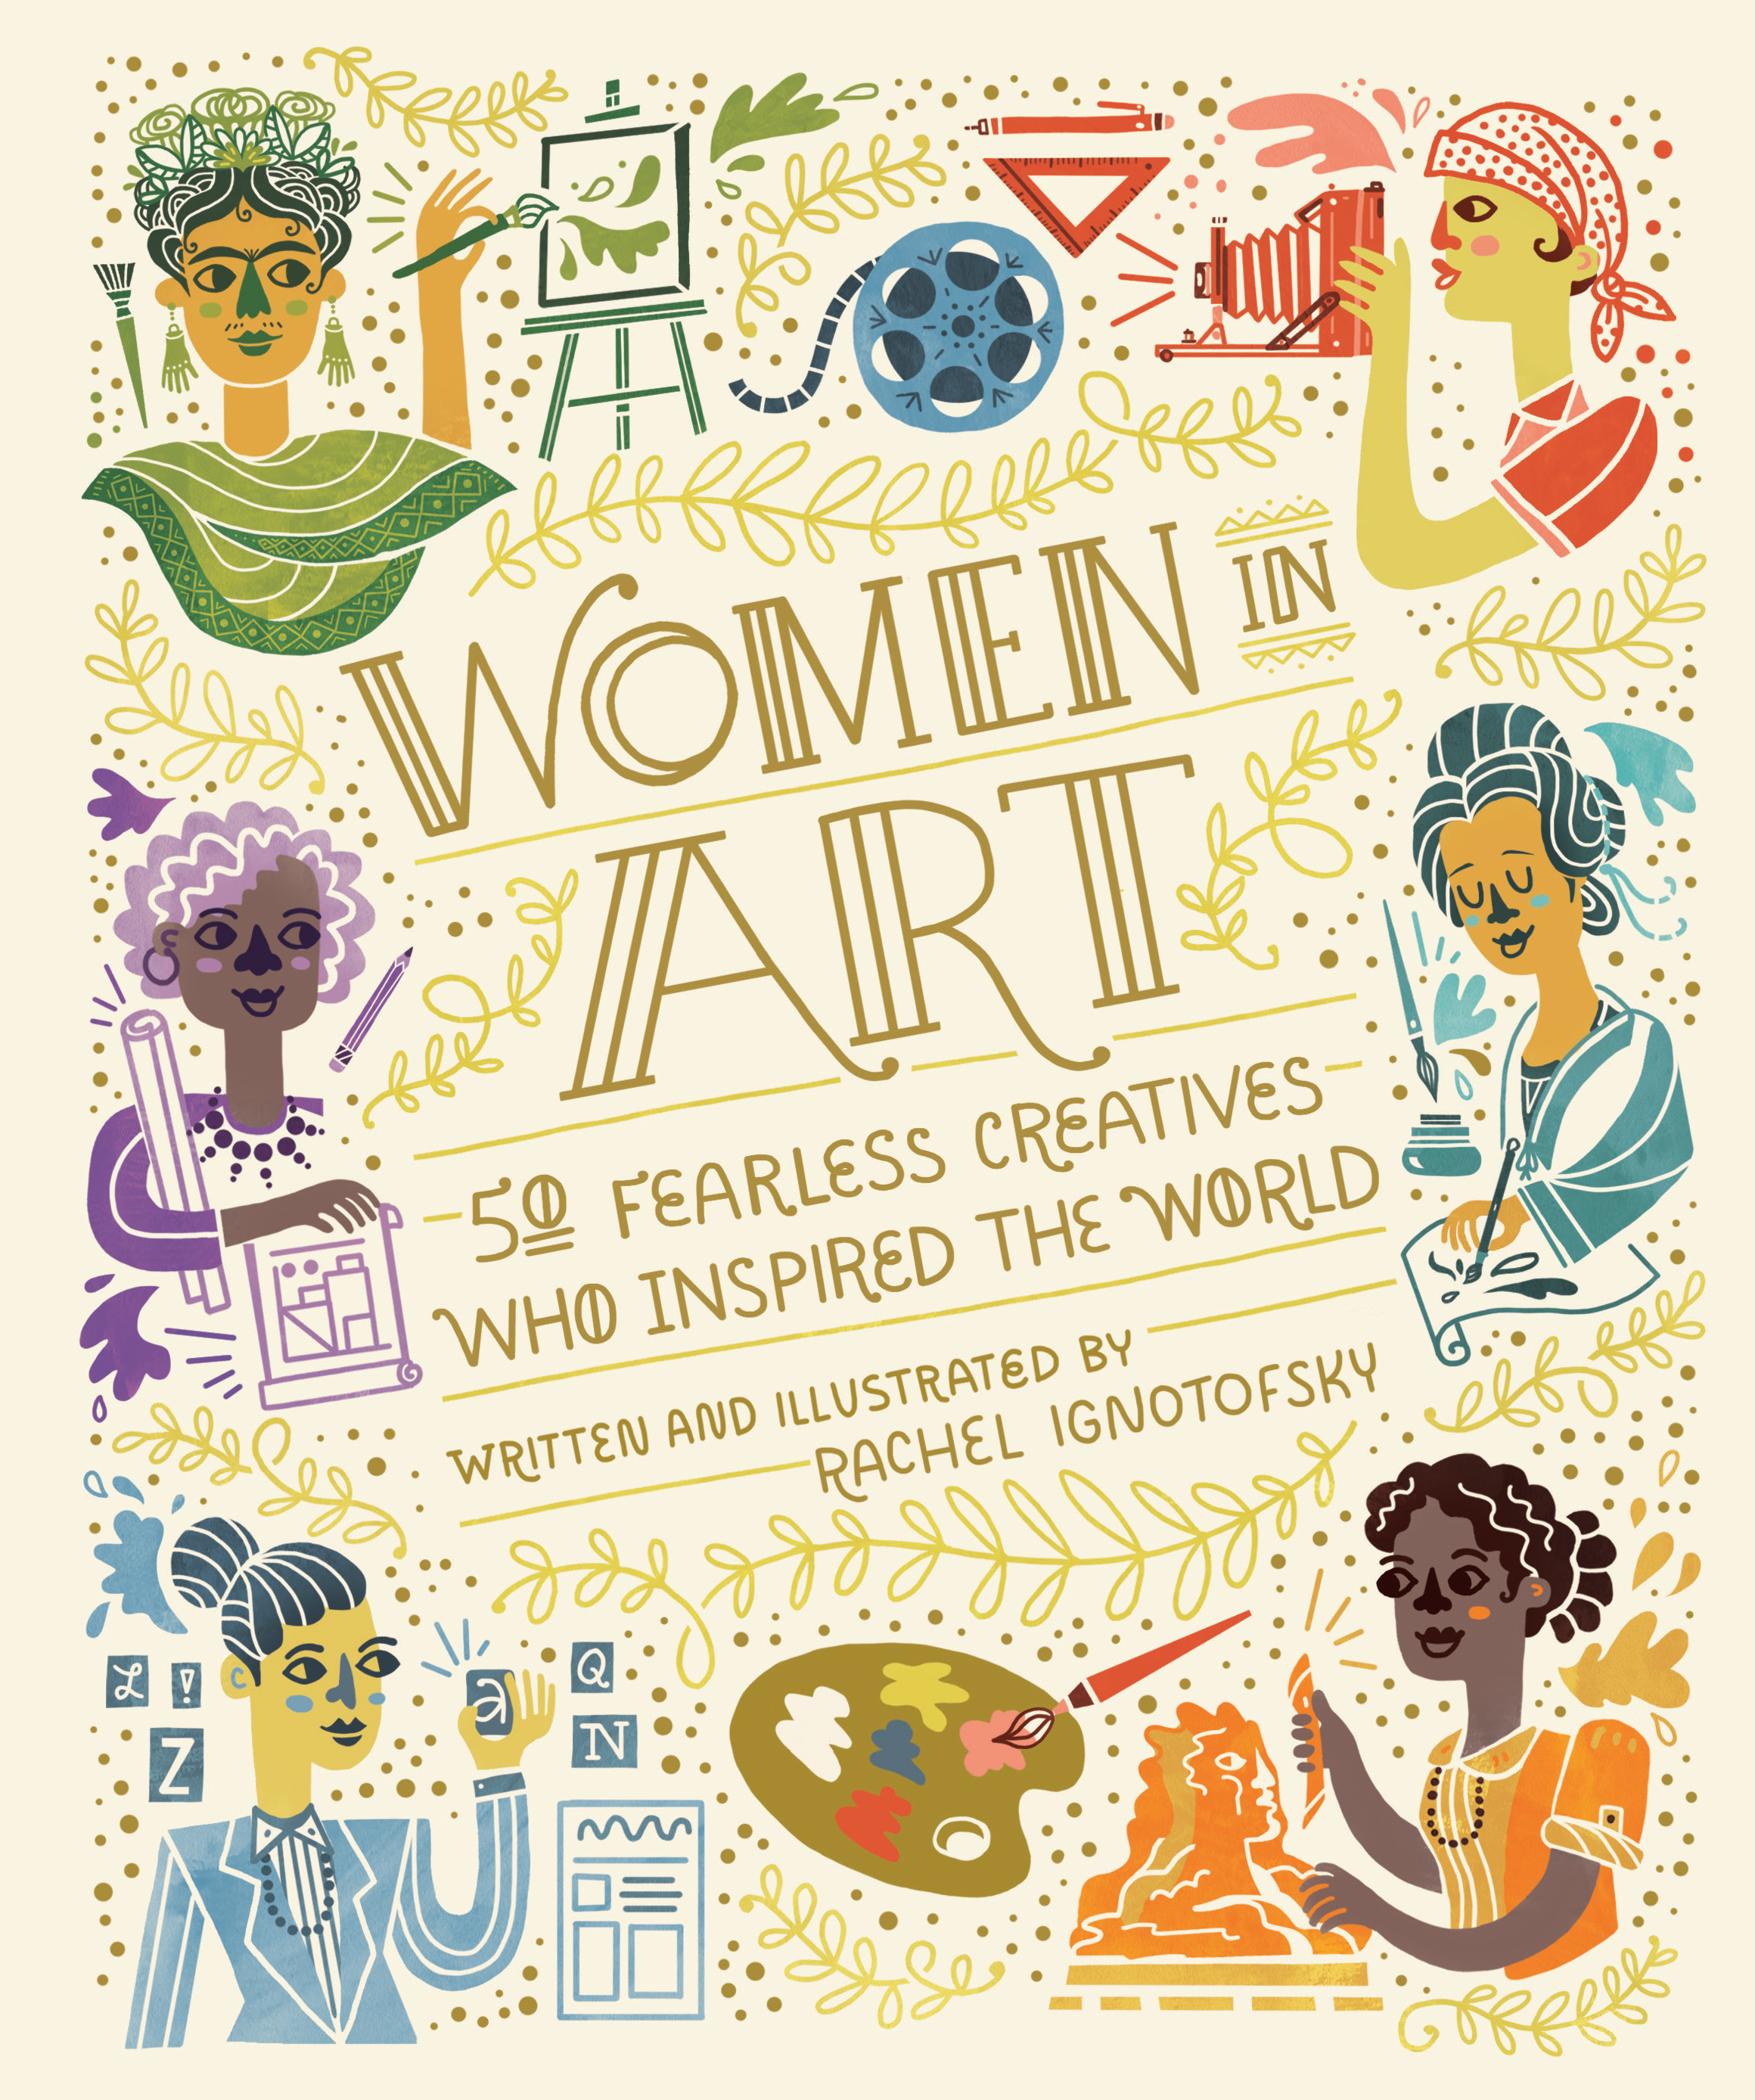 Book Launch: Women In Art by Rachel Ignotofsky